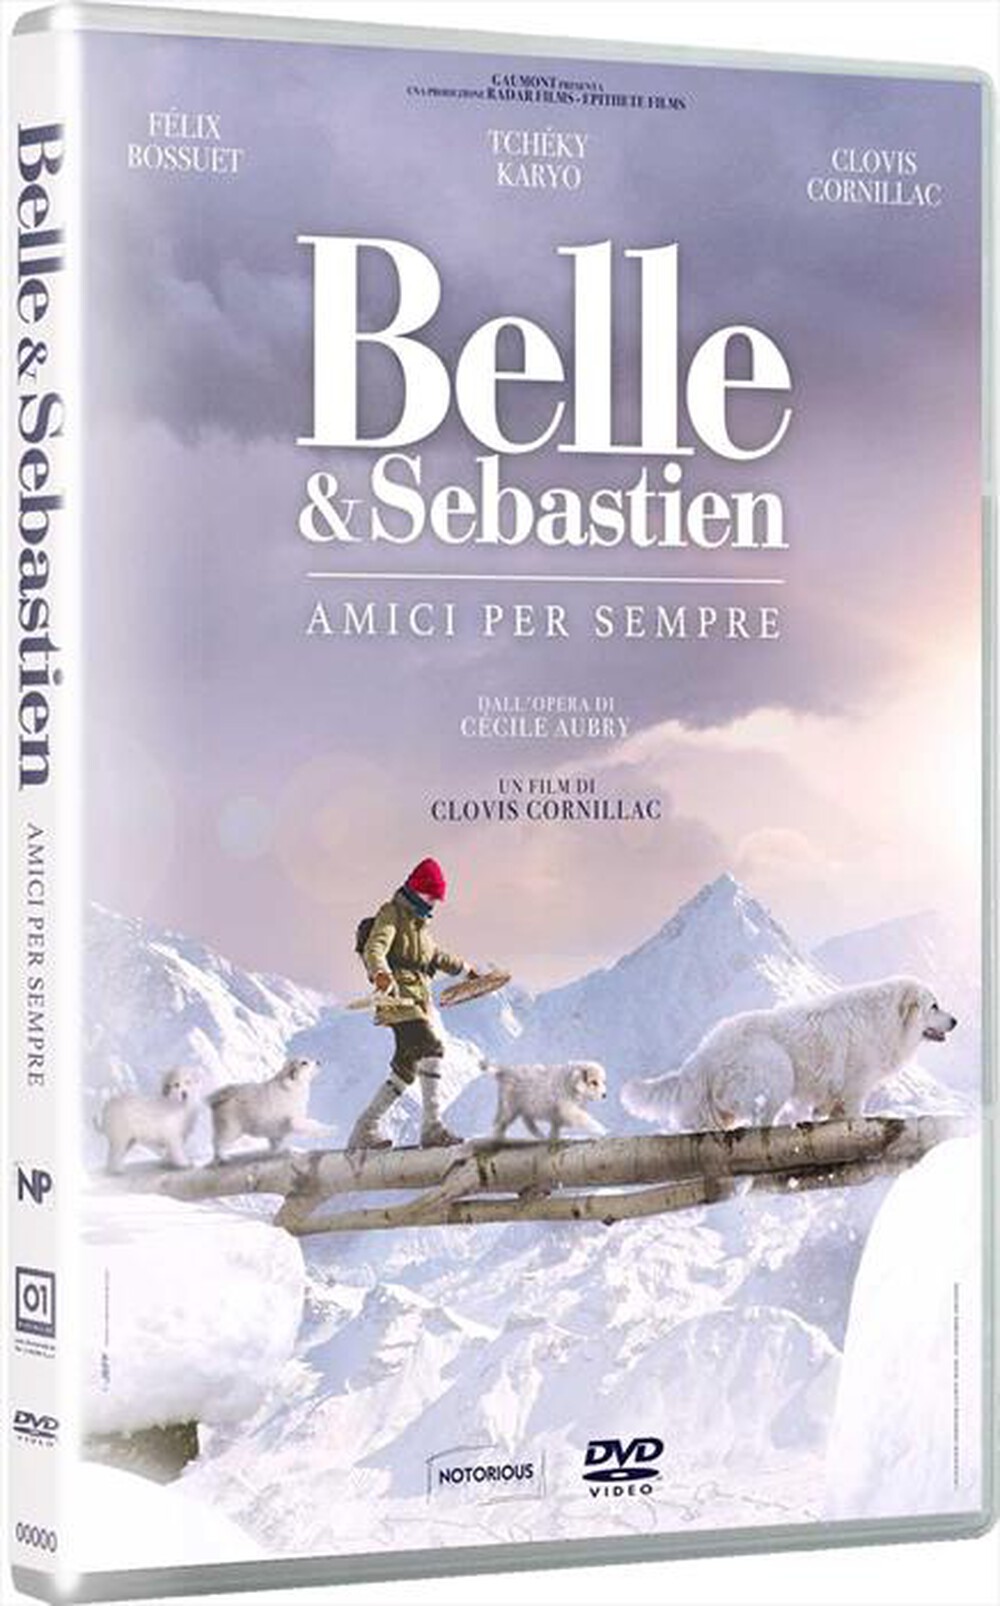 "EAGLE PICTURES - Belle & Sebastien - Amici Per Sempre"